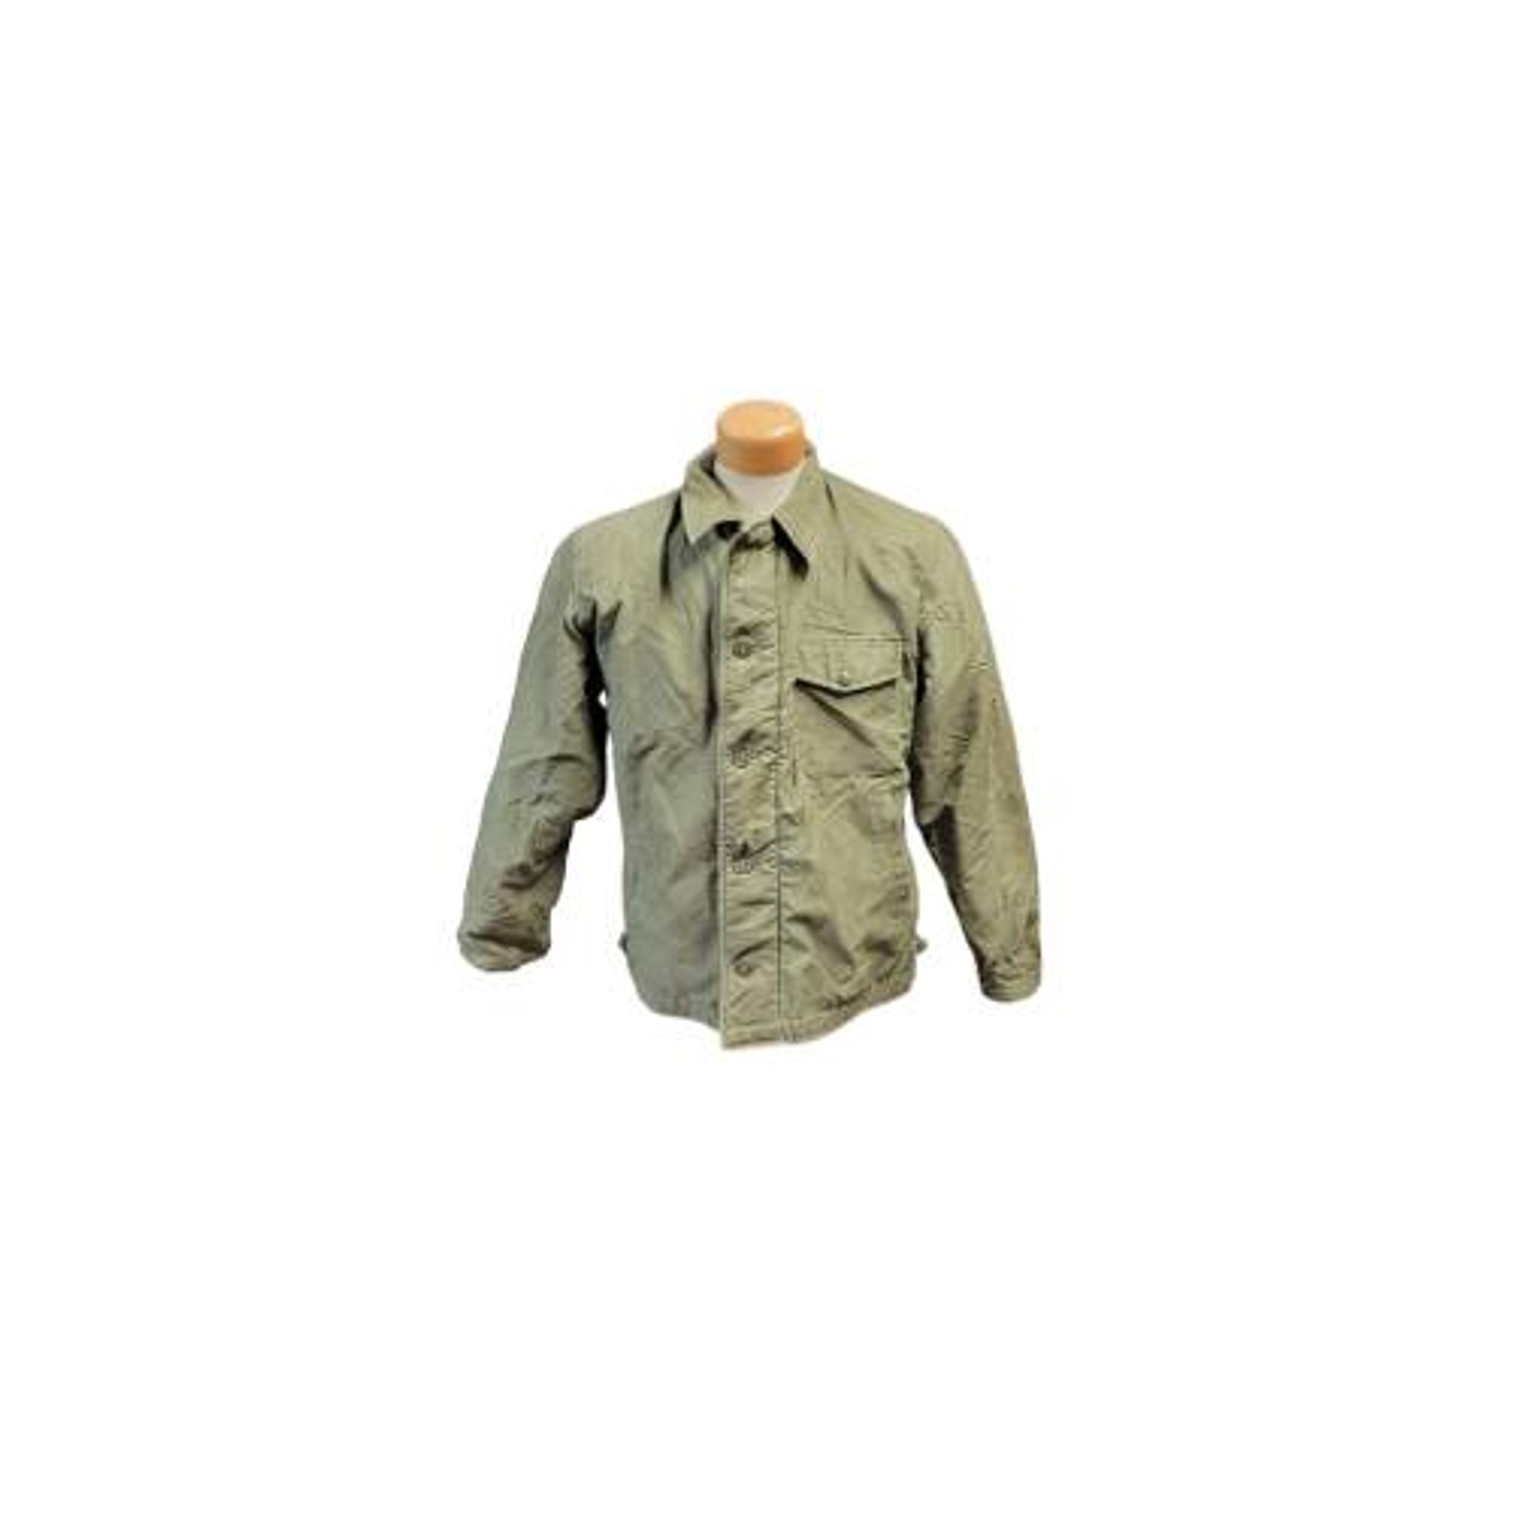 Vintage - U.S. Armed Forces Navy Cold Weather Deck Jacket